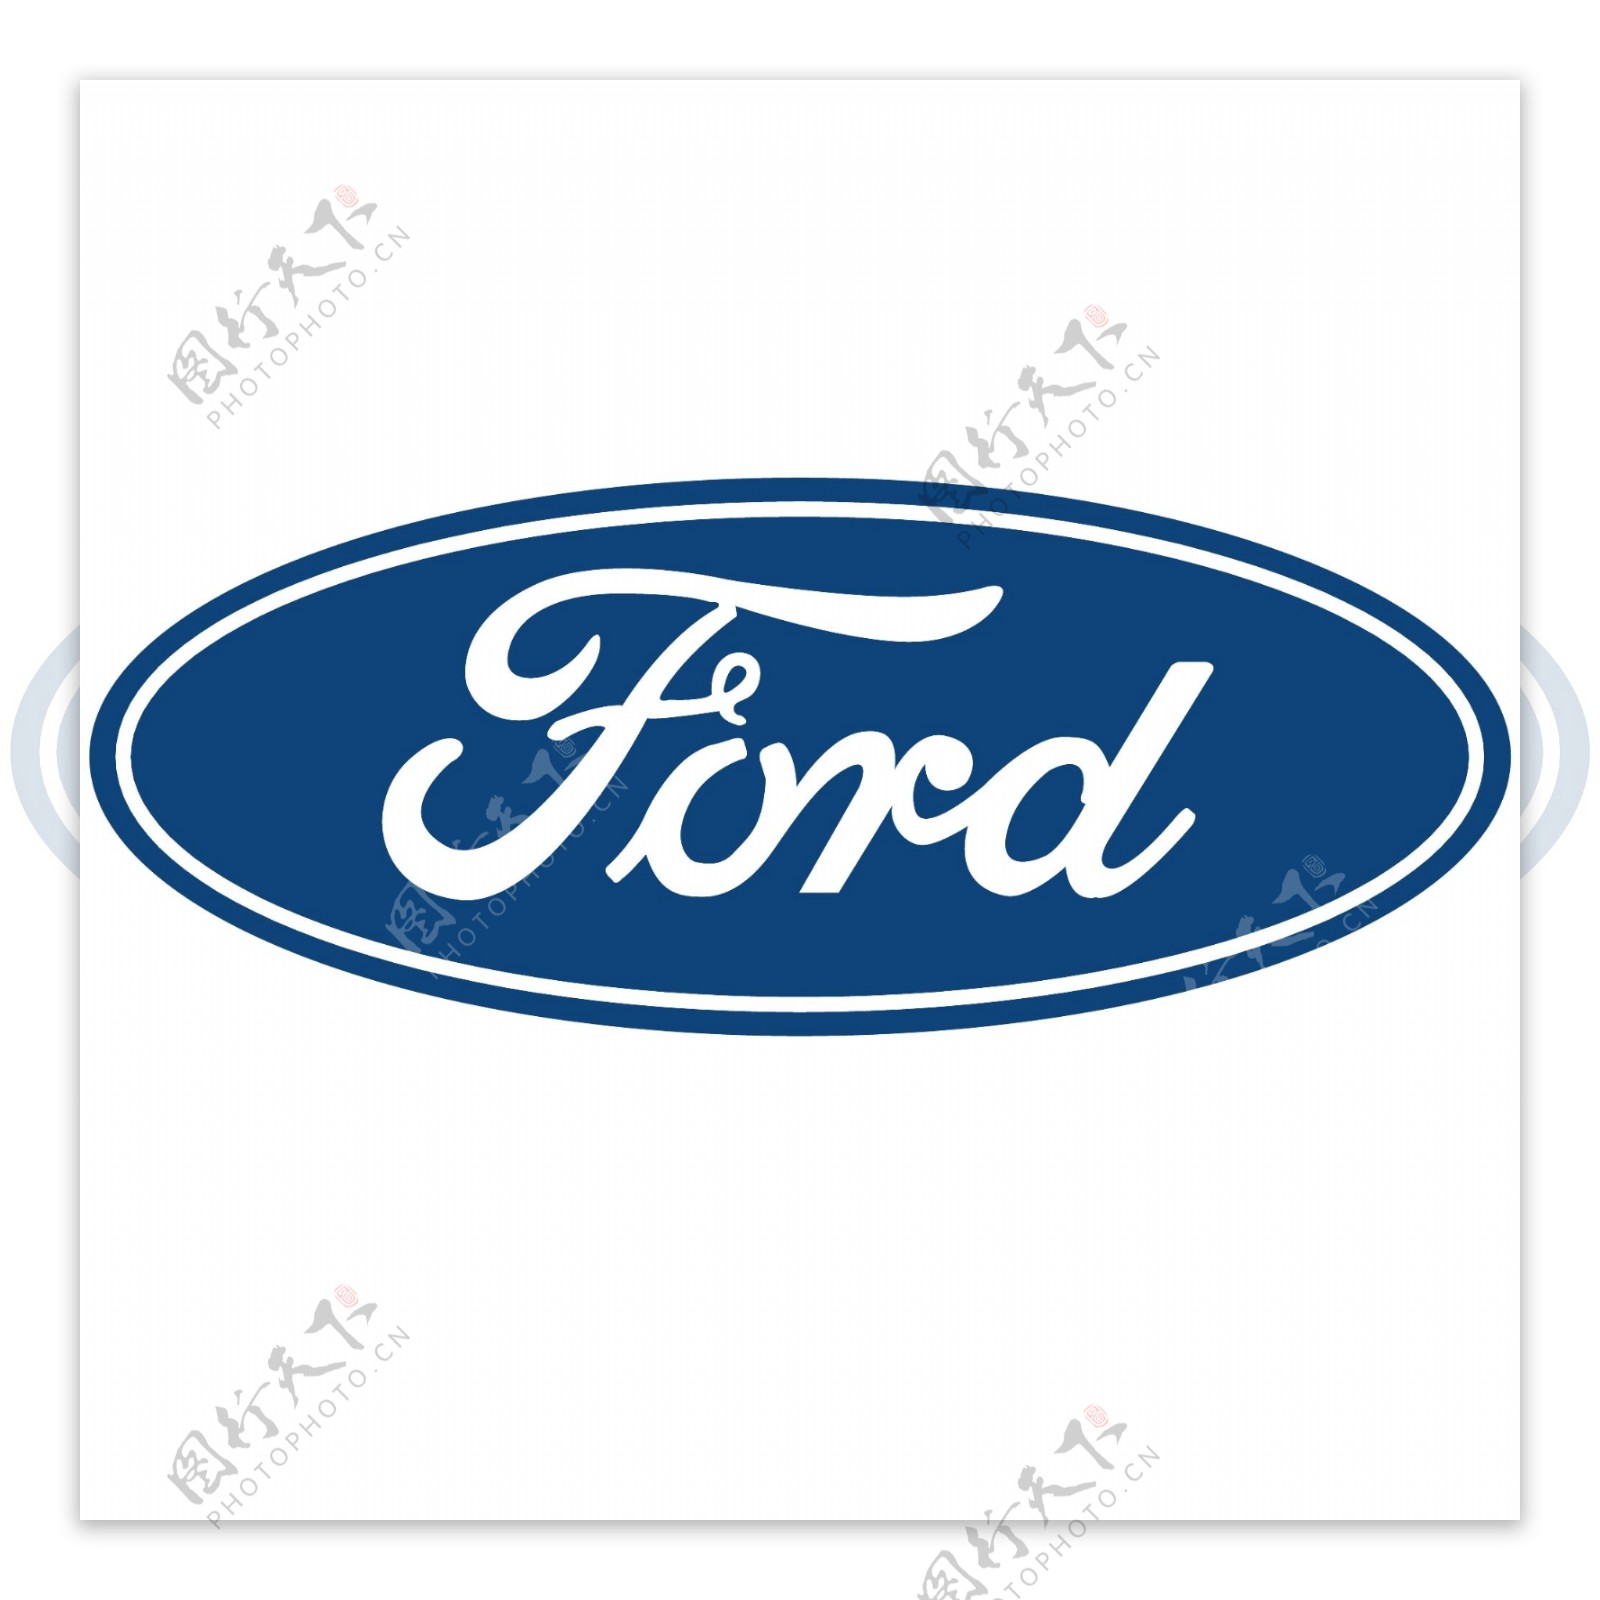 品牌设计公司带你探寻世界著名汽车品牌logo设计内涵